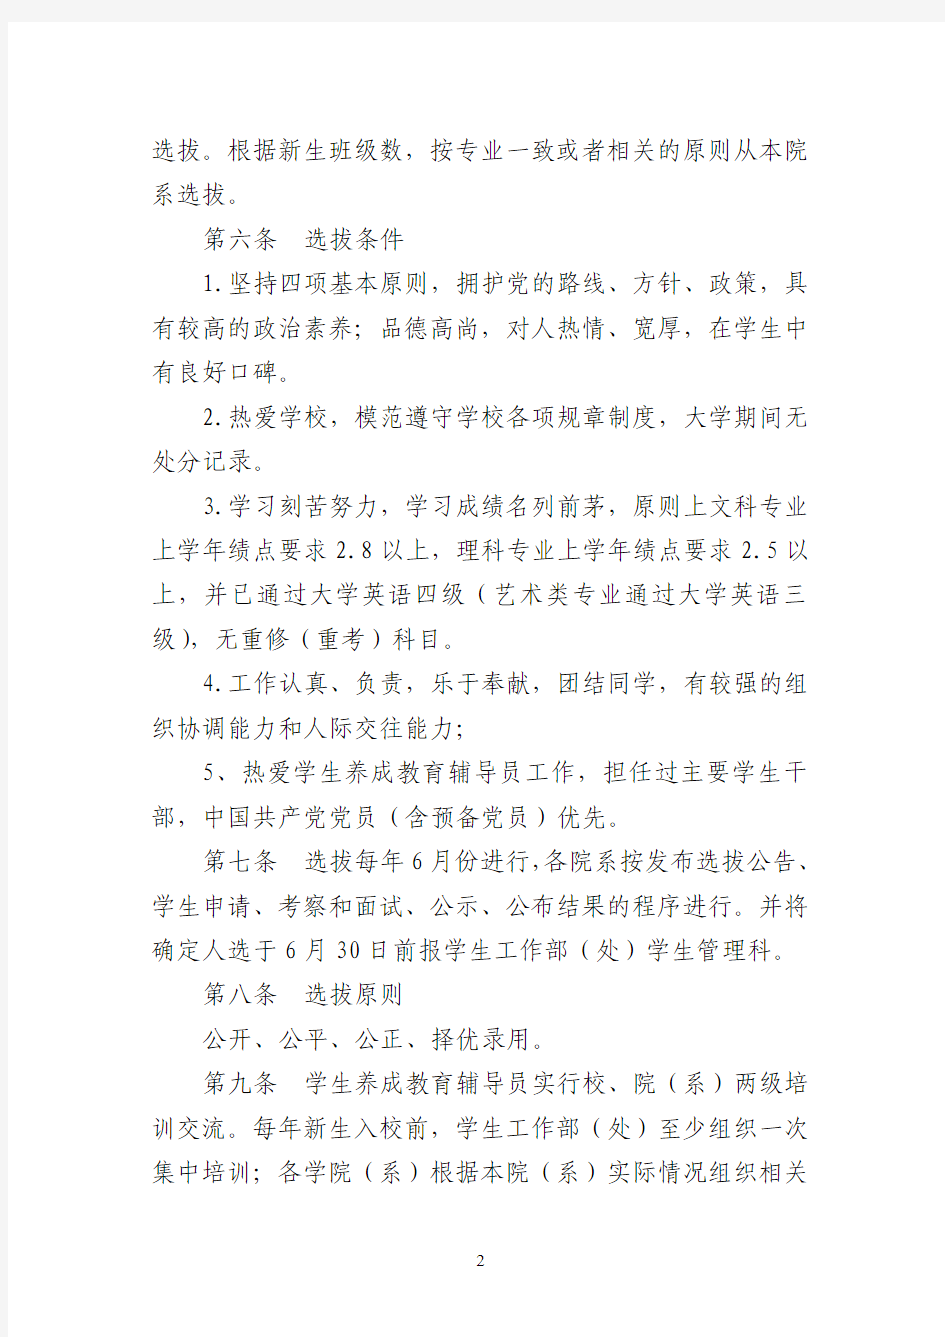 湘潭大学养成教育辅导员管理办法(修订稿)